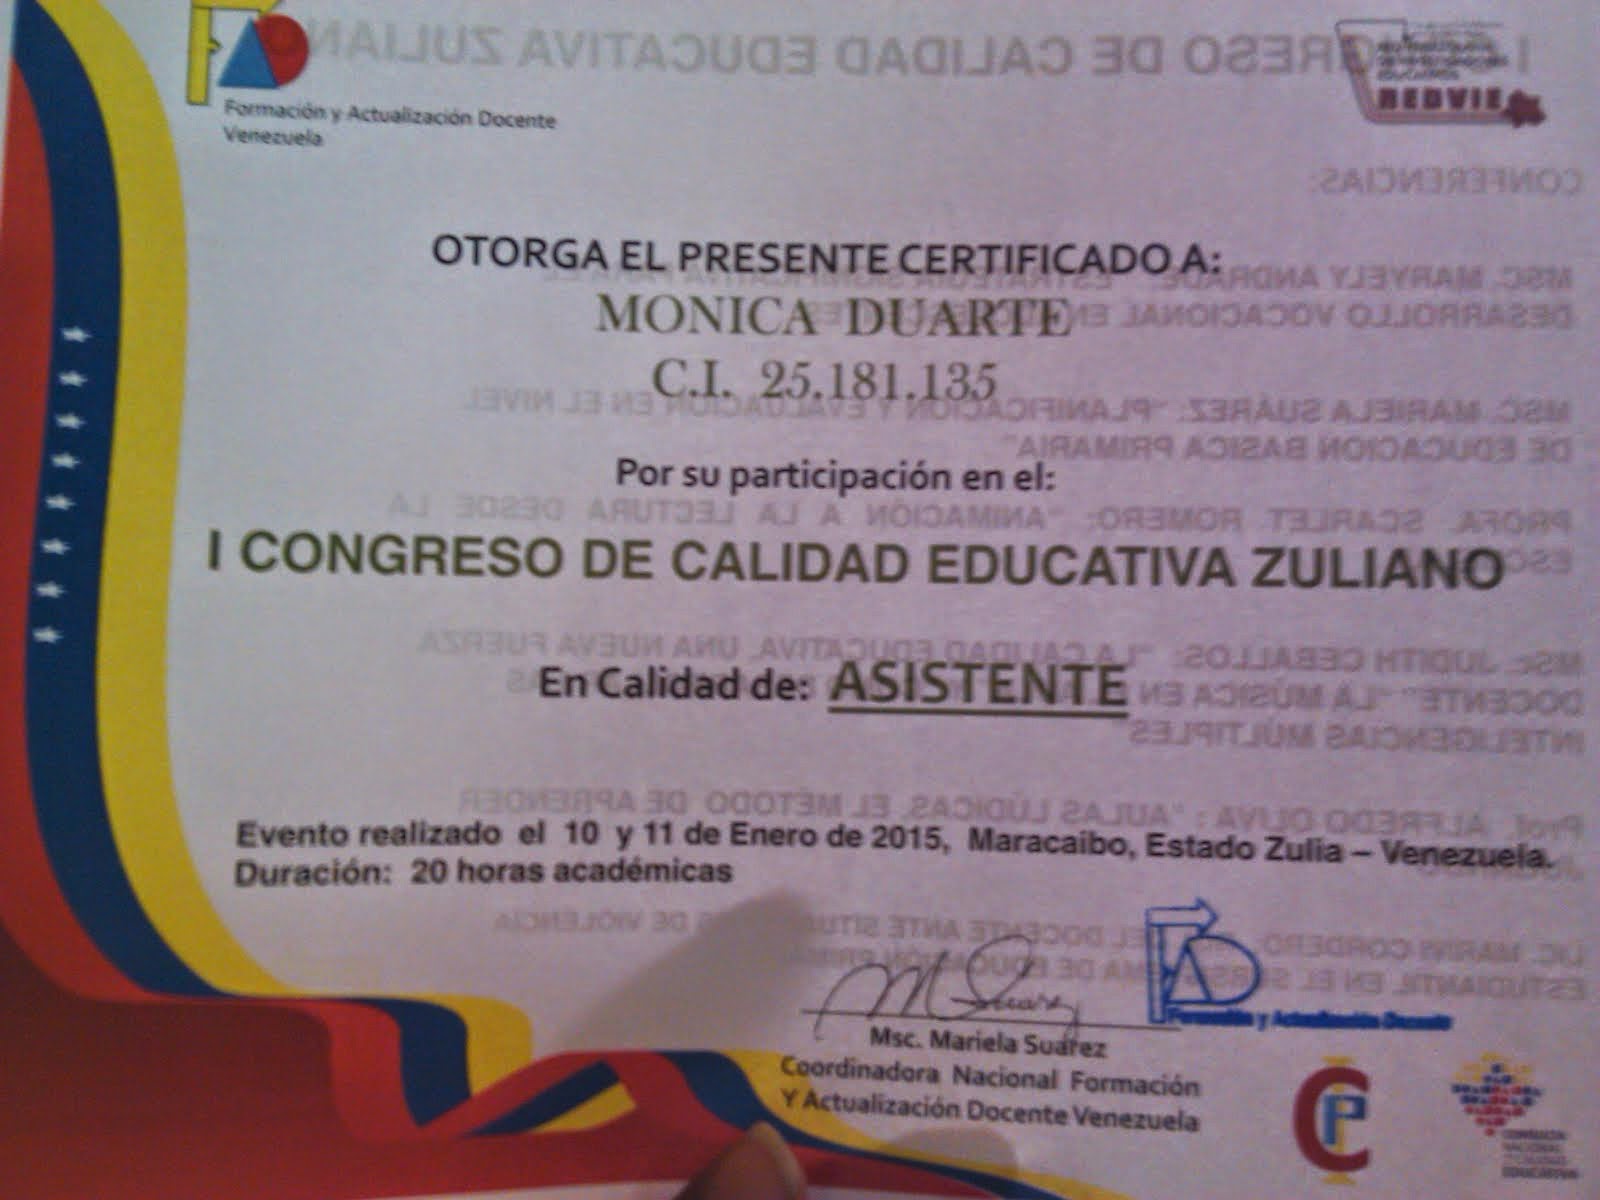 I CONGRESO DE CALIDAD EDUCATIVA ZULIANO